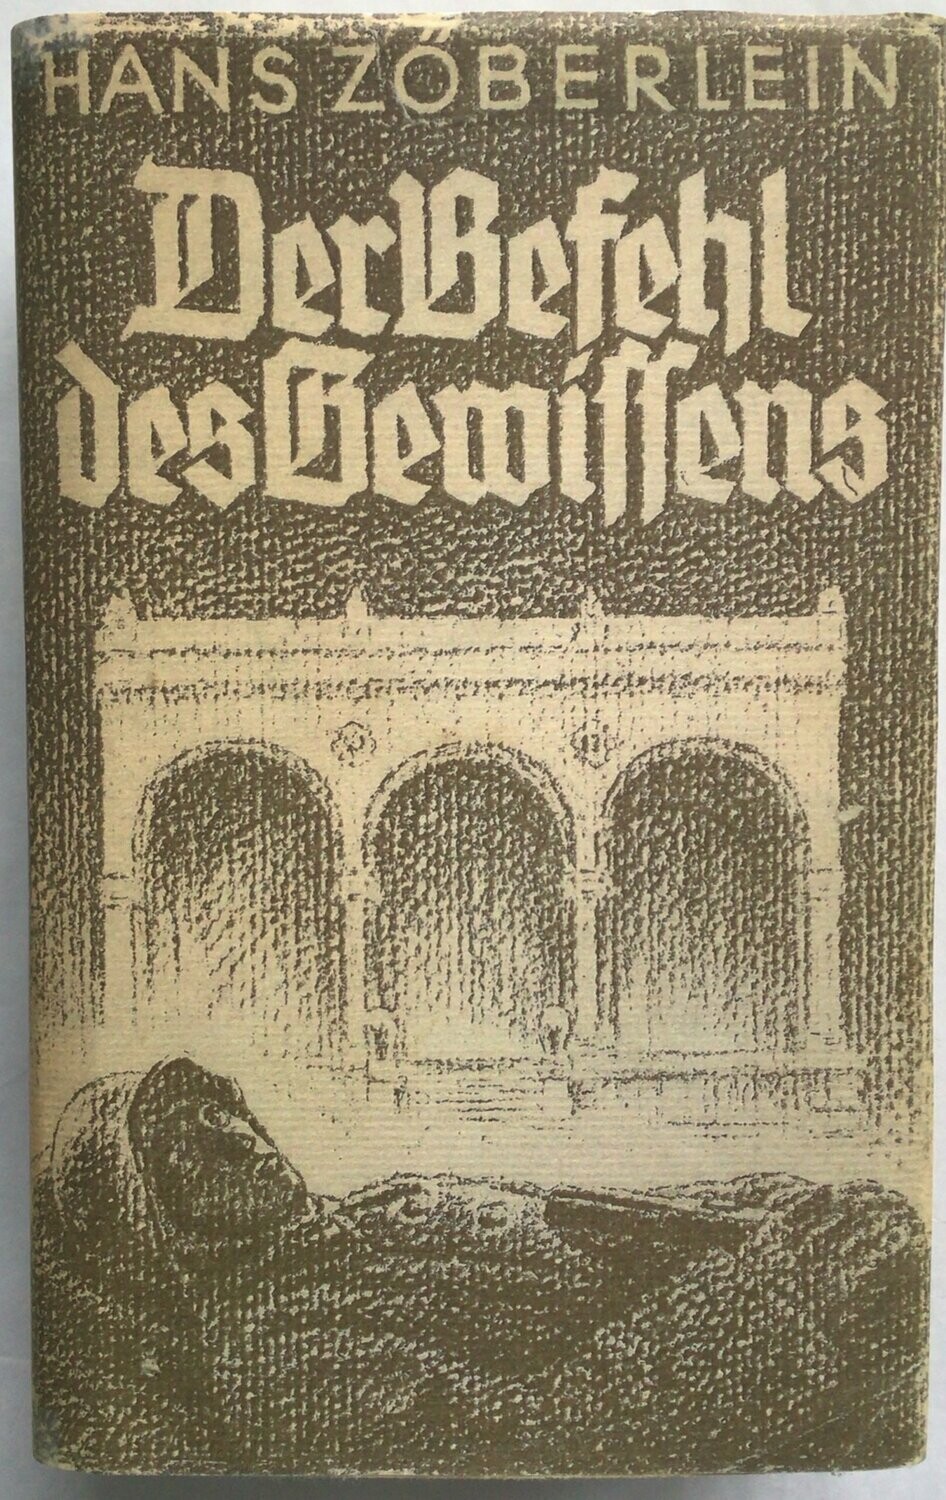 Zöberlein: Der Befehl des Gewissens - 17. Auflage aus dem Jahr 1941 mit Schutzumschlag (Kopie)